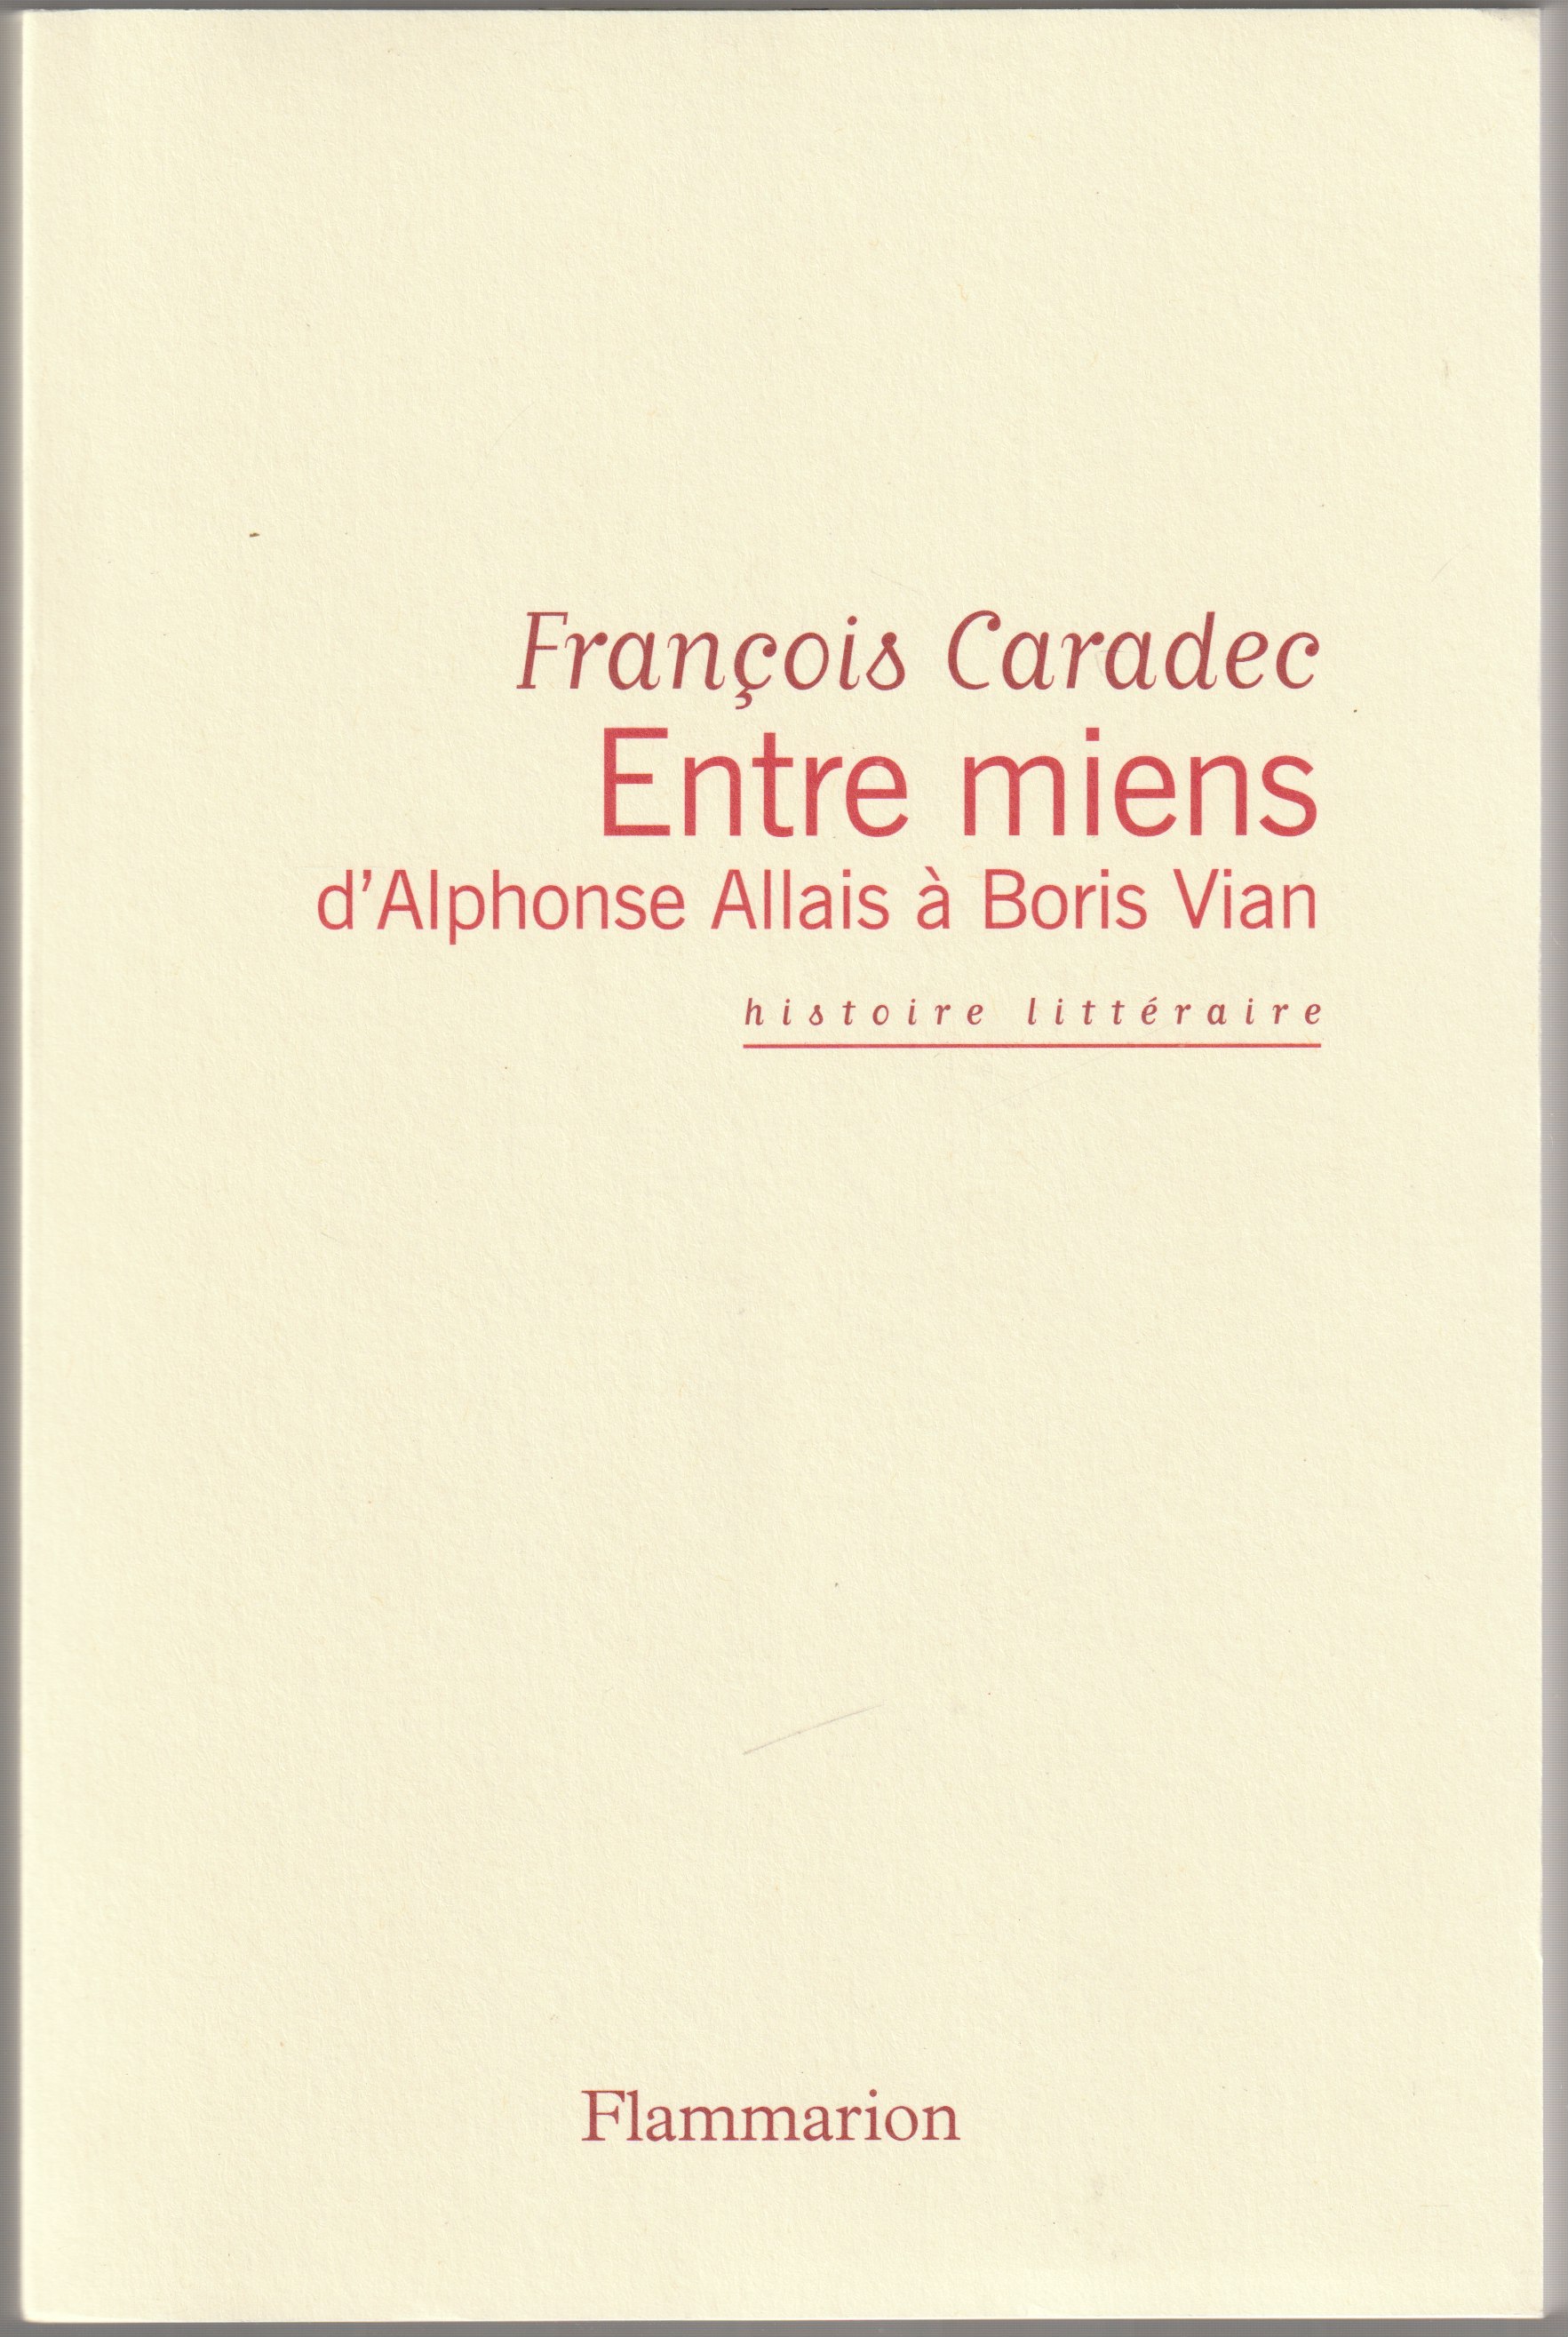 Entre miens : d'Alphonse Allais a Boris Vian.